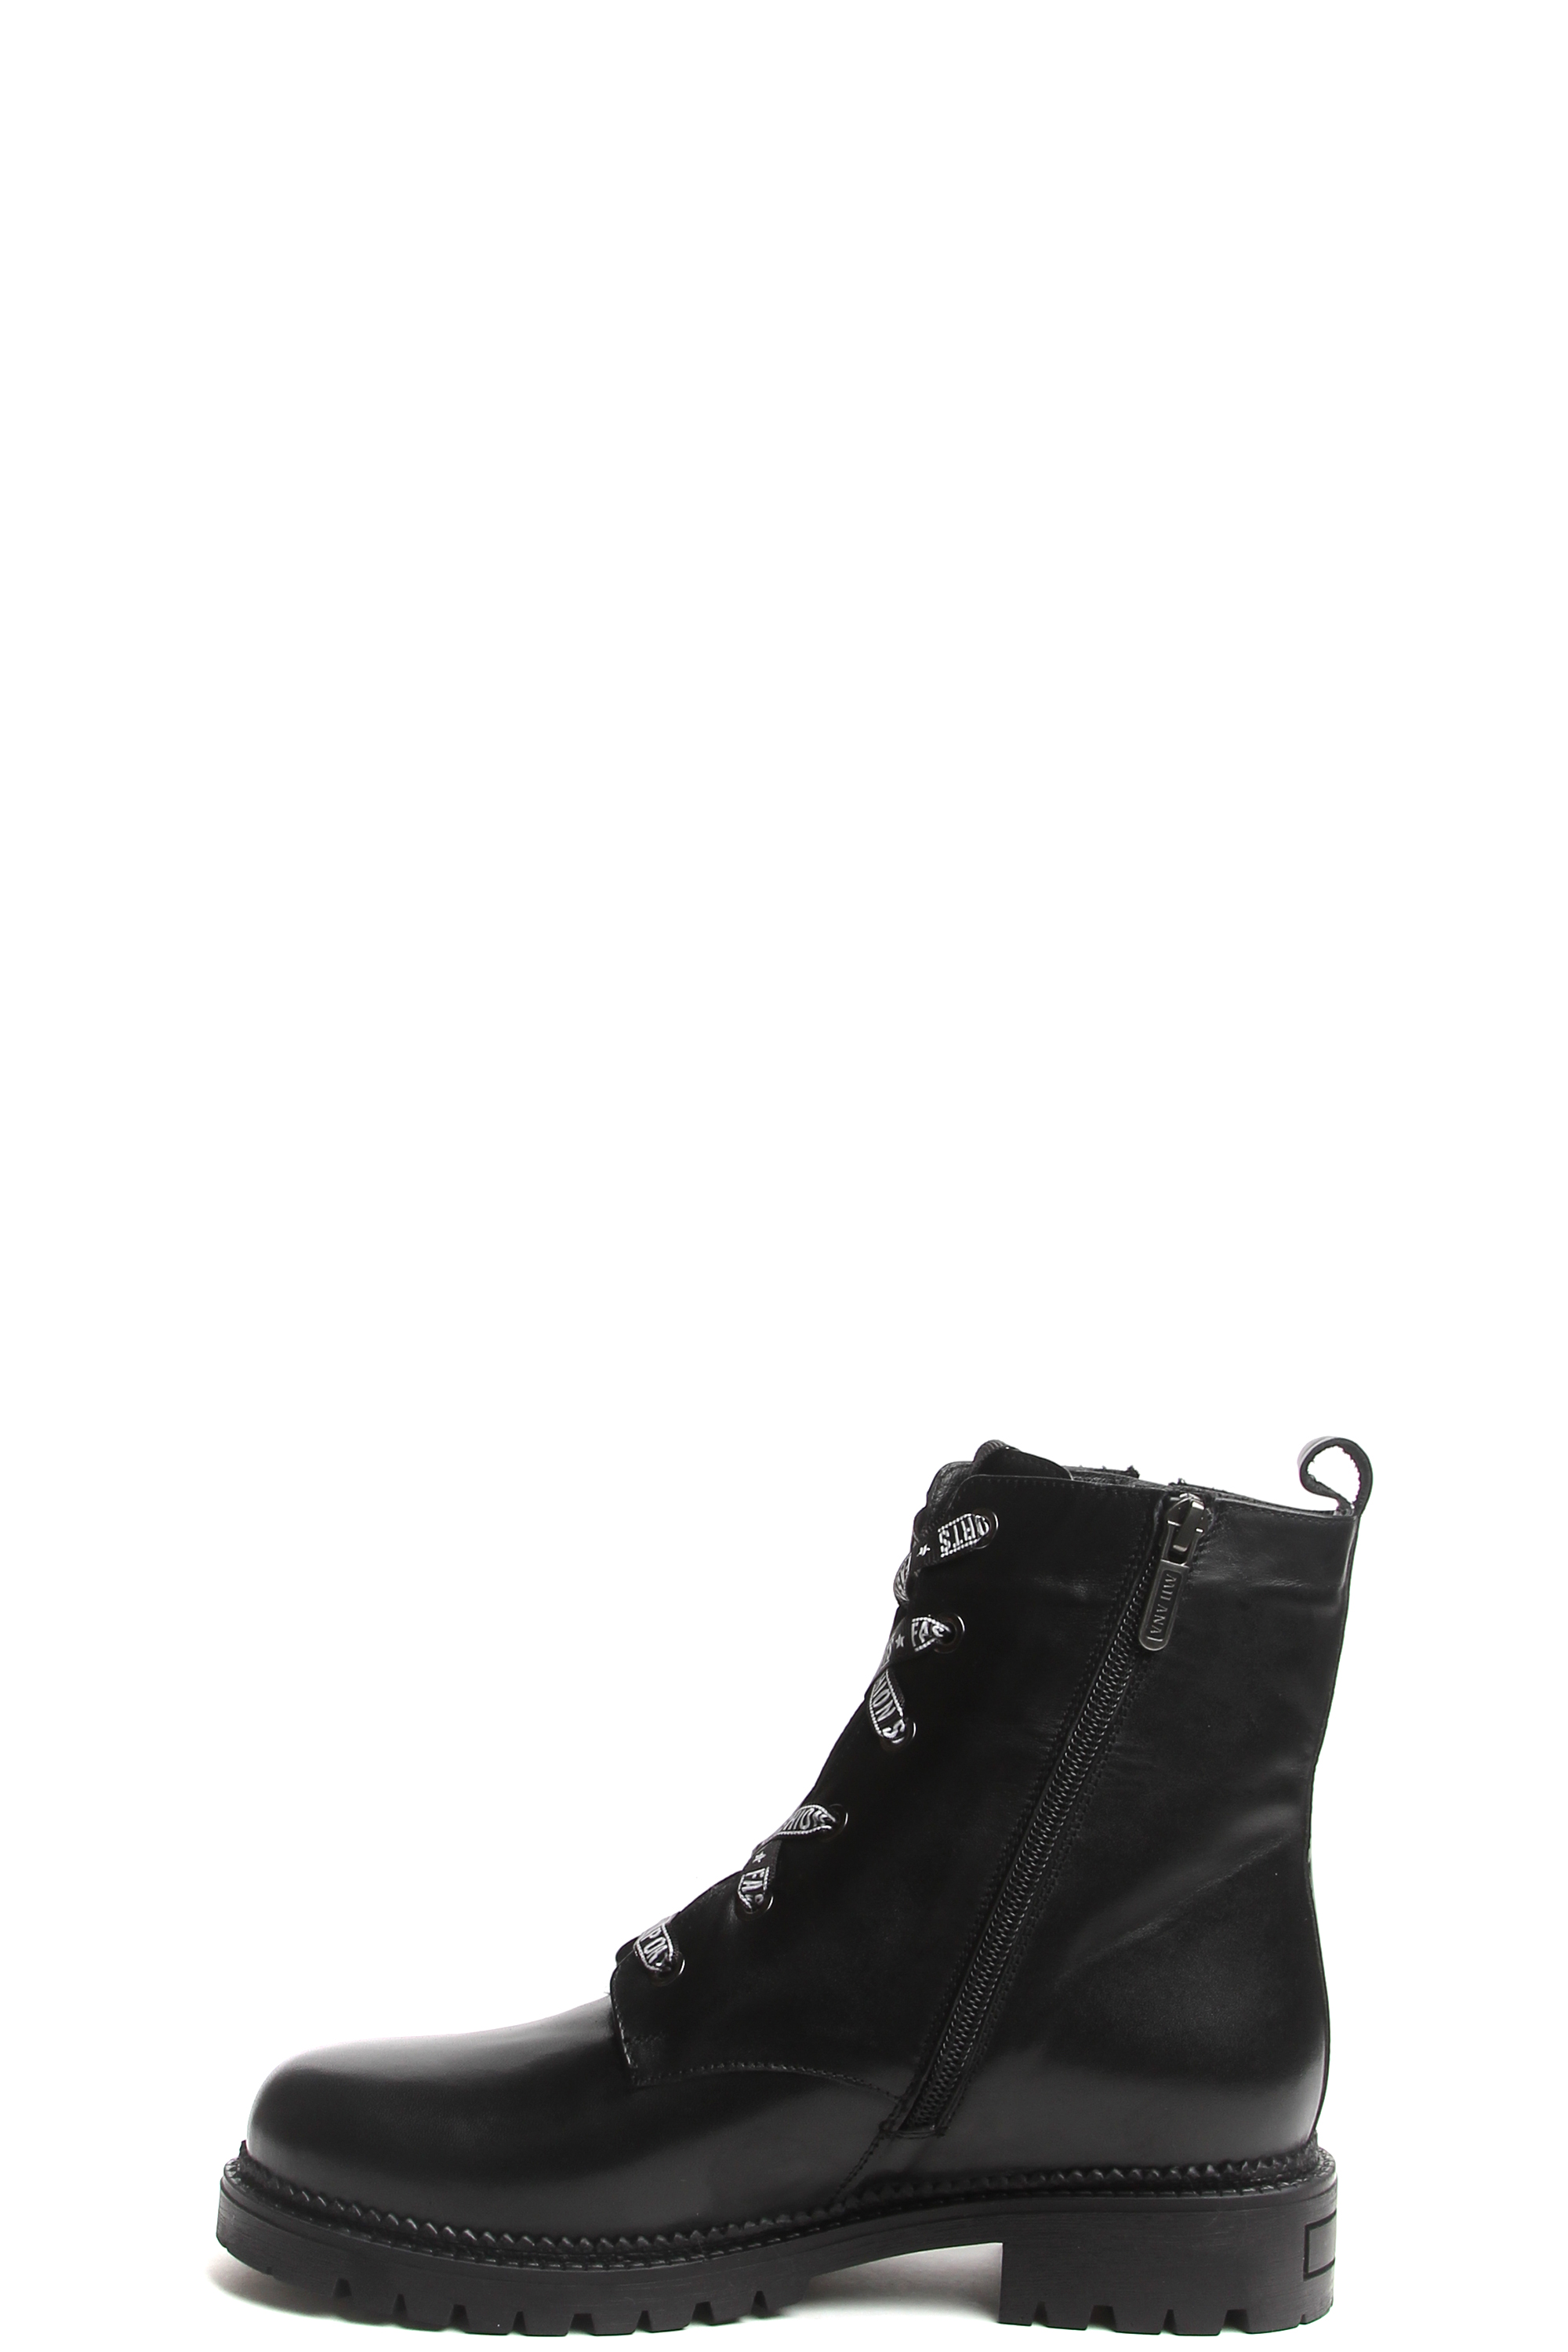 Ботинки MILANA 182377-1-110F черный - купить 12990